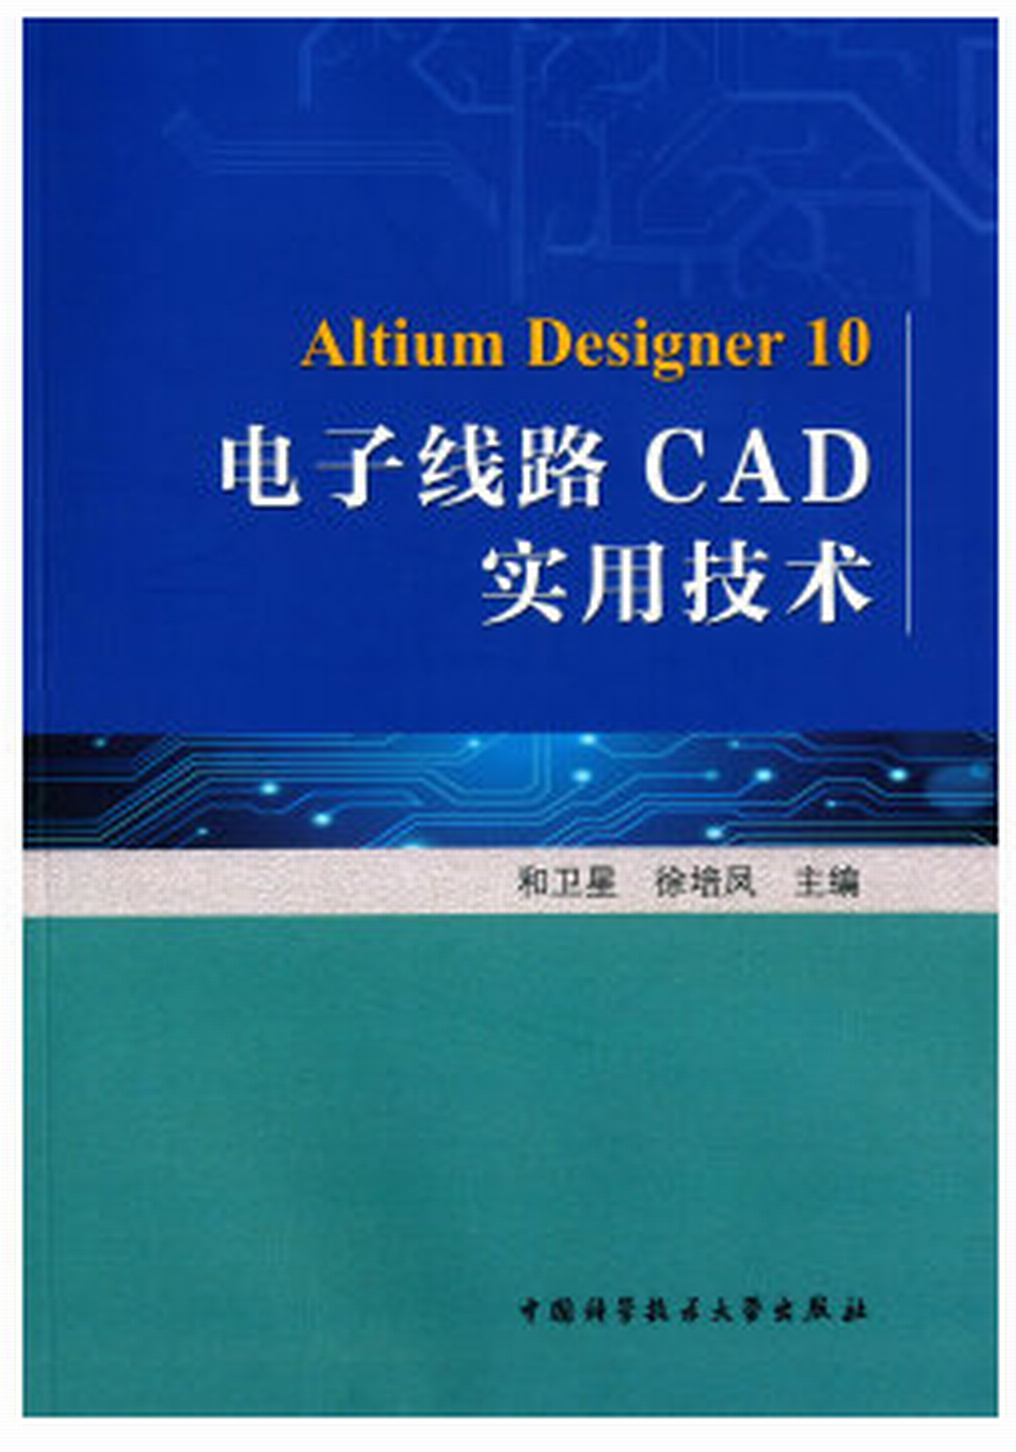 電子線路CAD實用技術